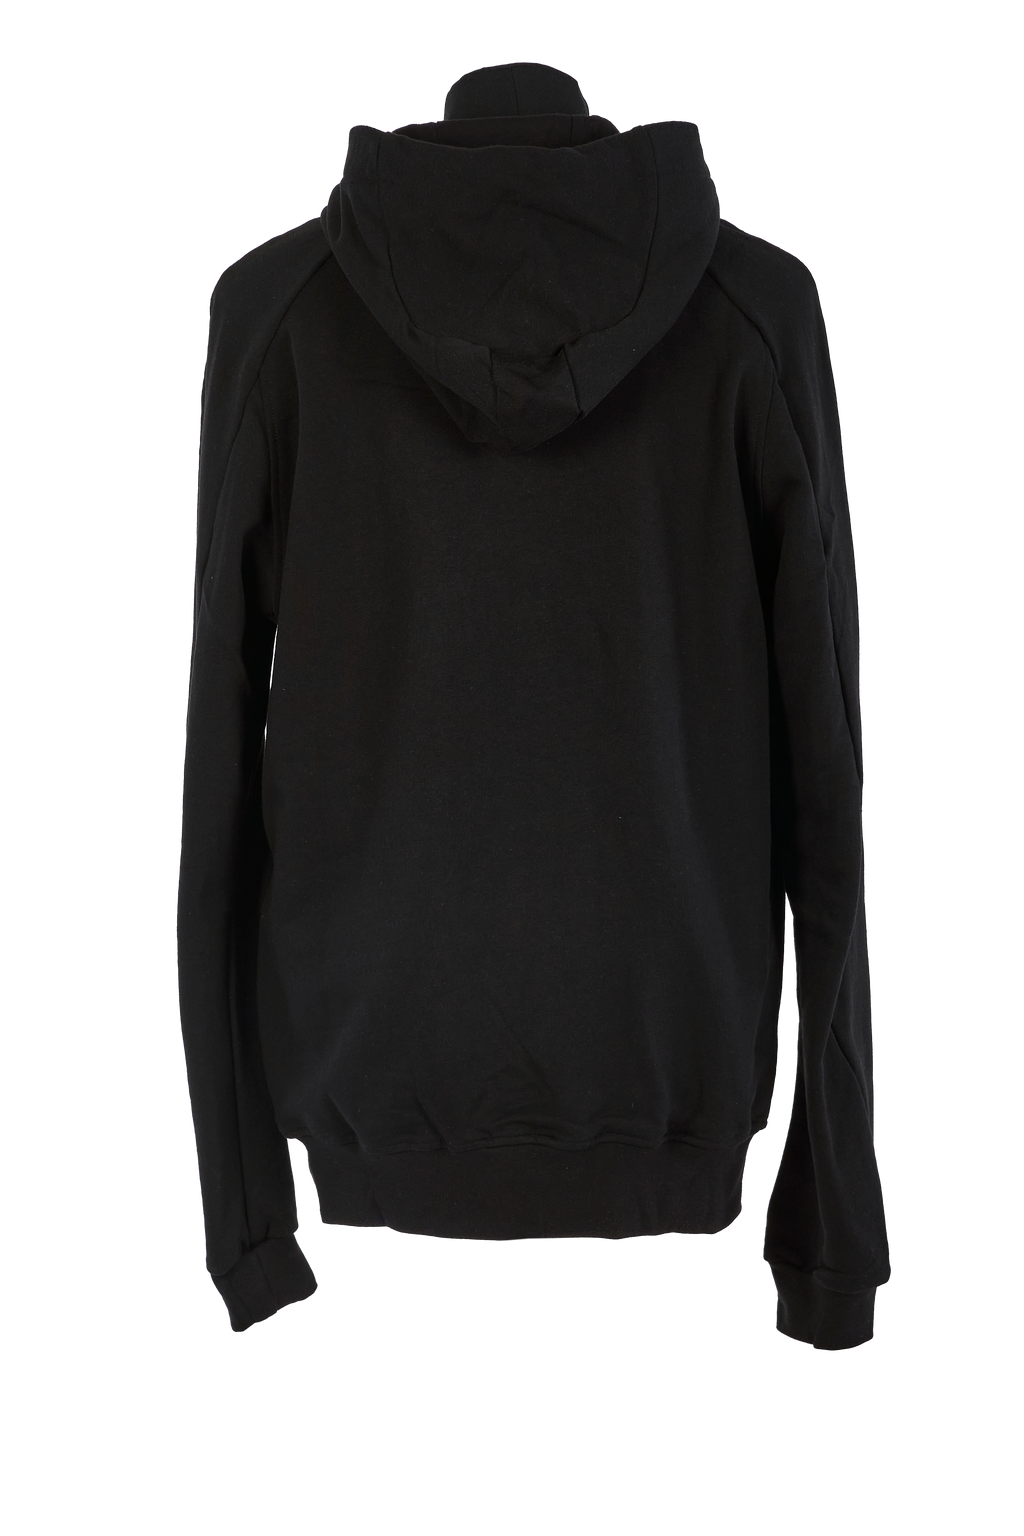 hooded sweatshirt with print  •  black